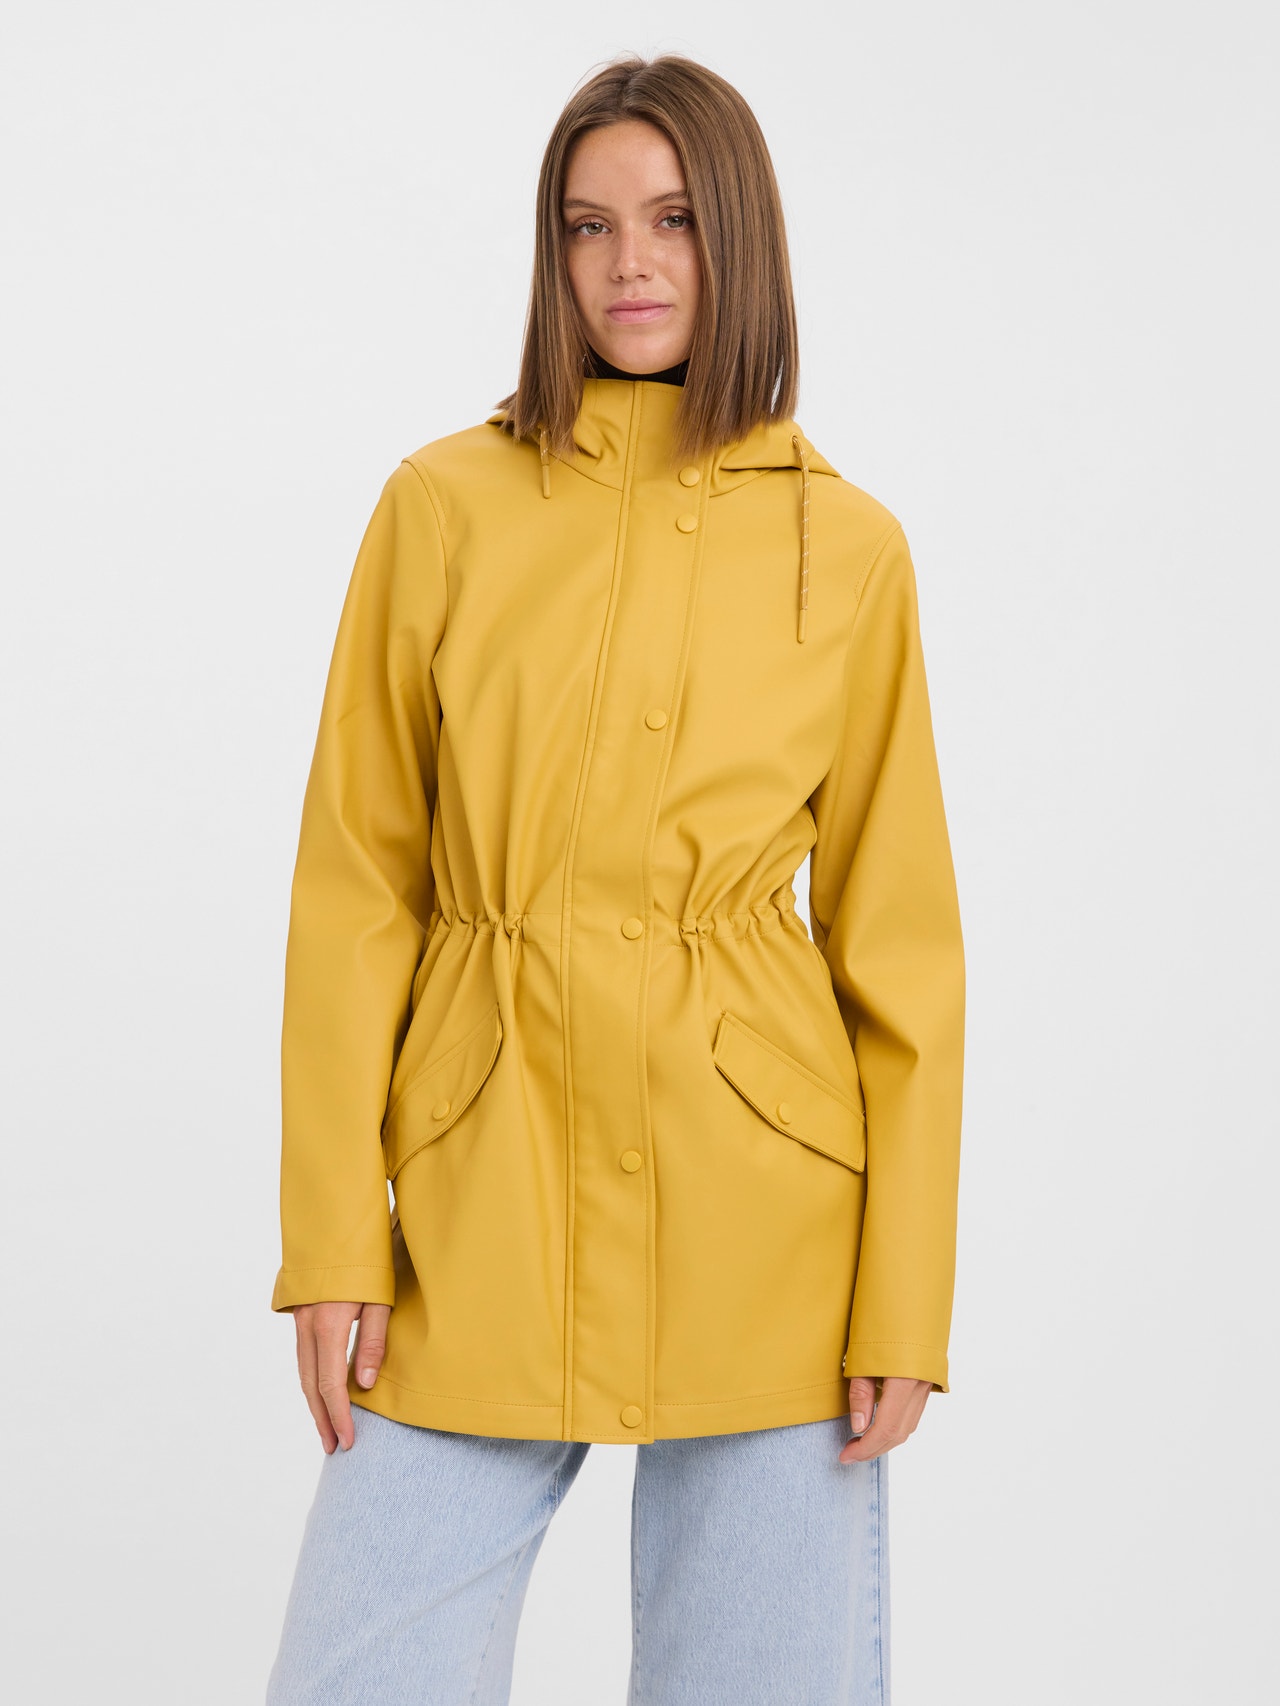 Vero Moda VMMALOU Jacket -Amber Gold - 10257216